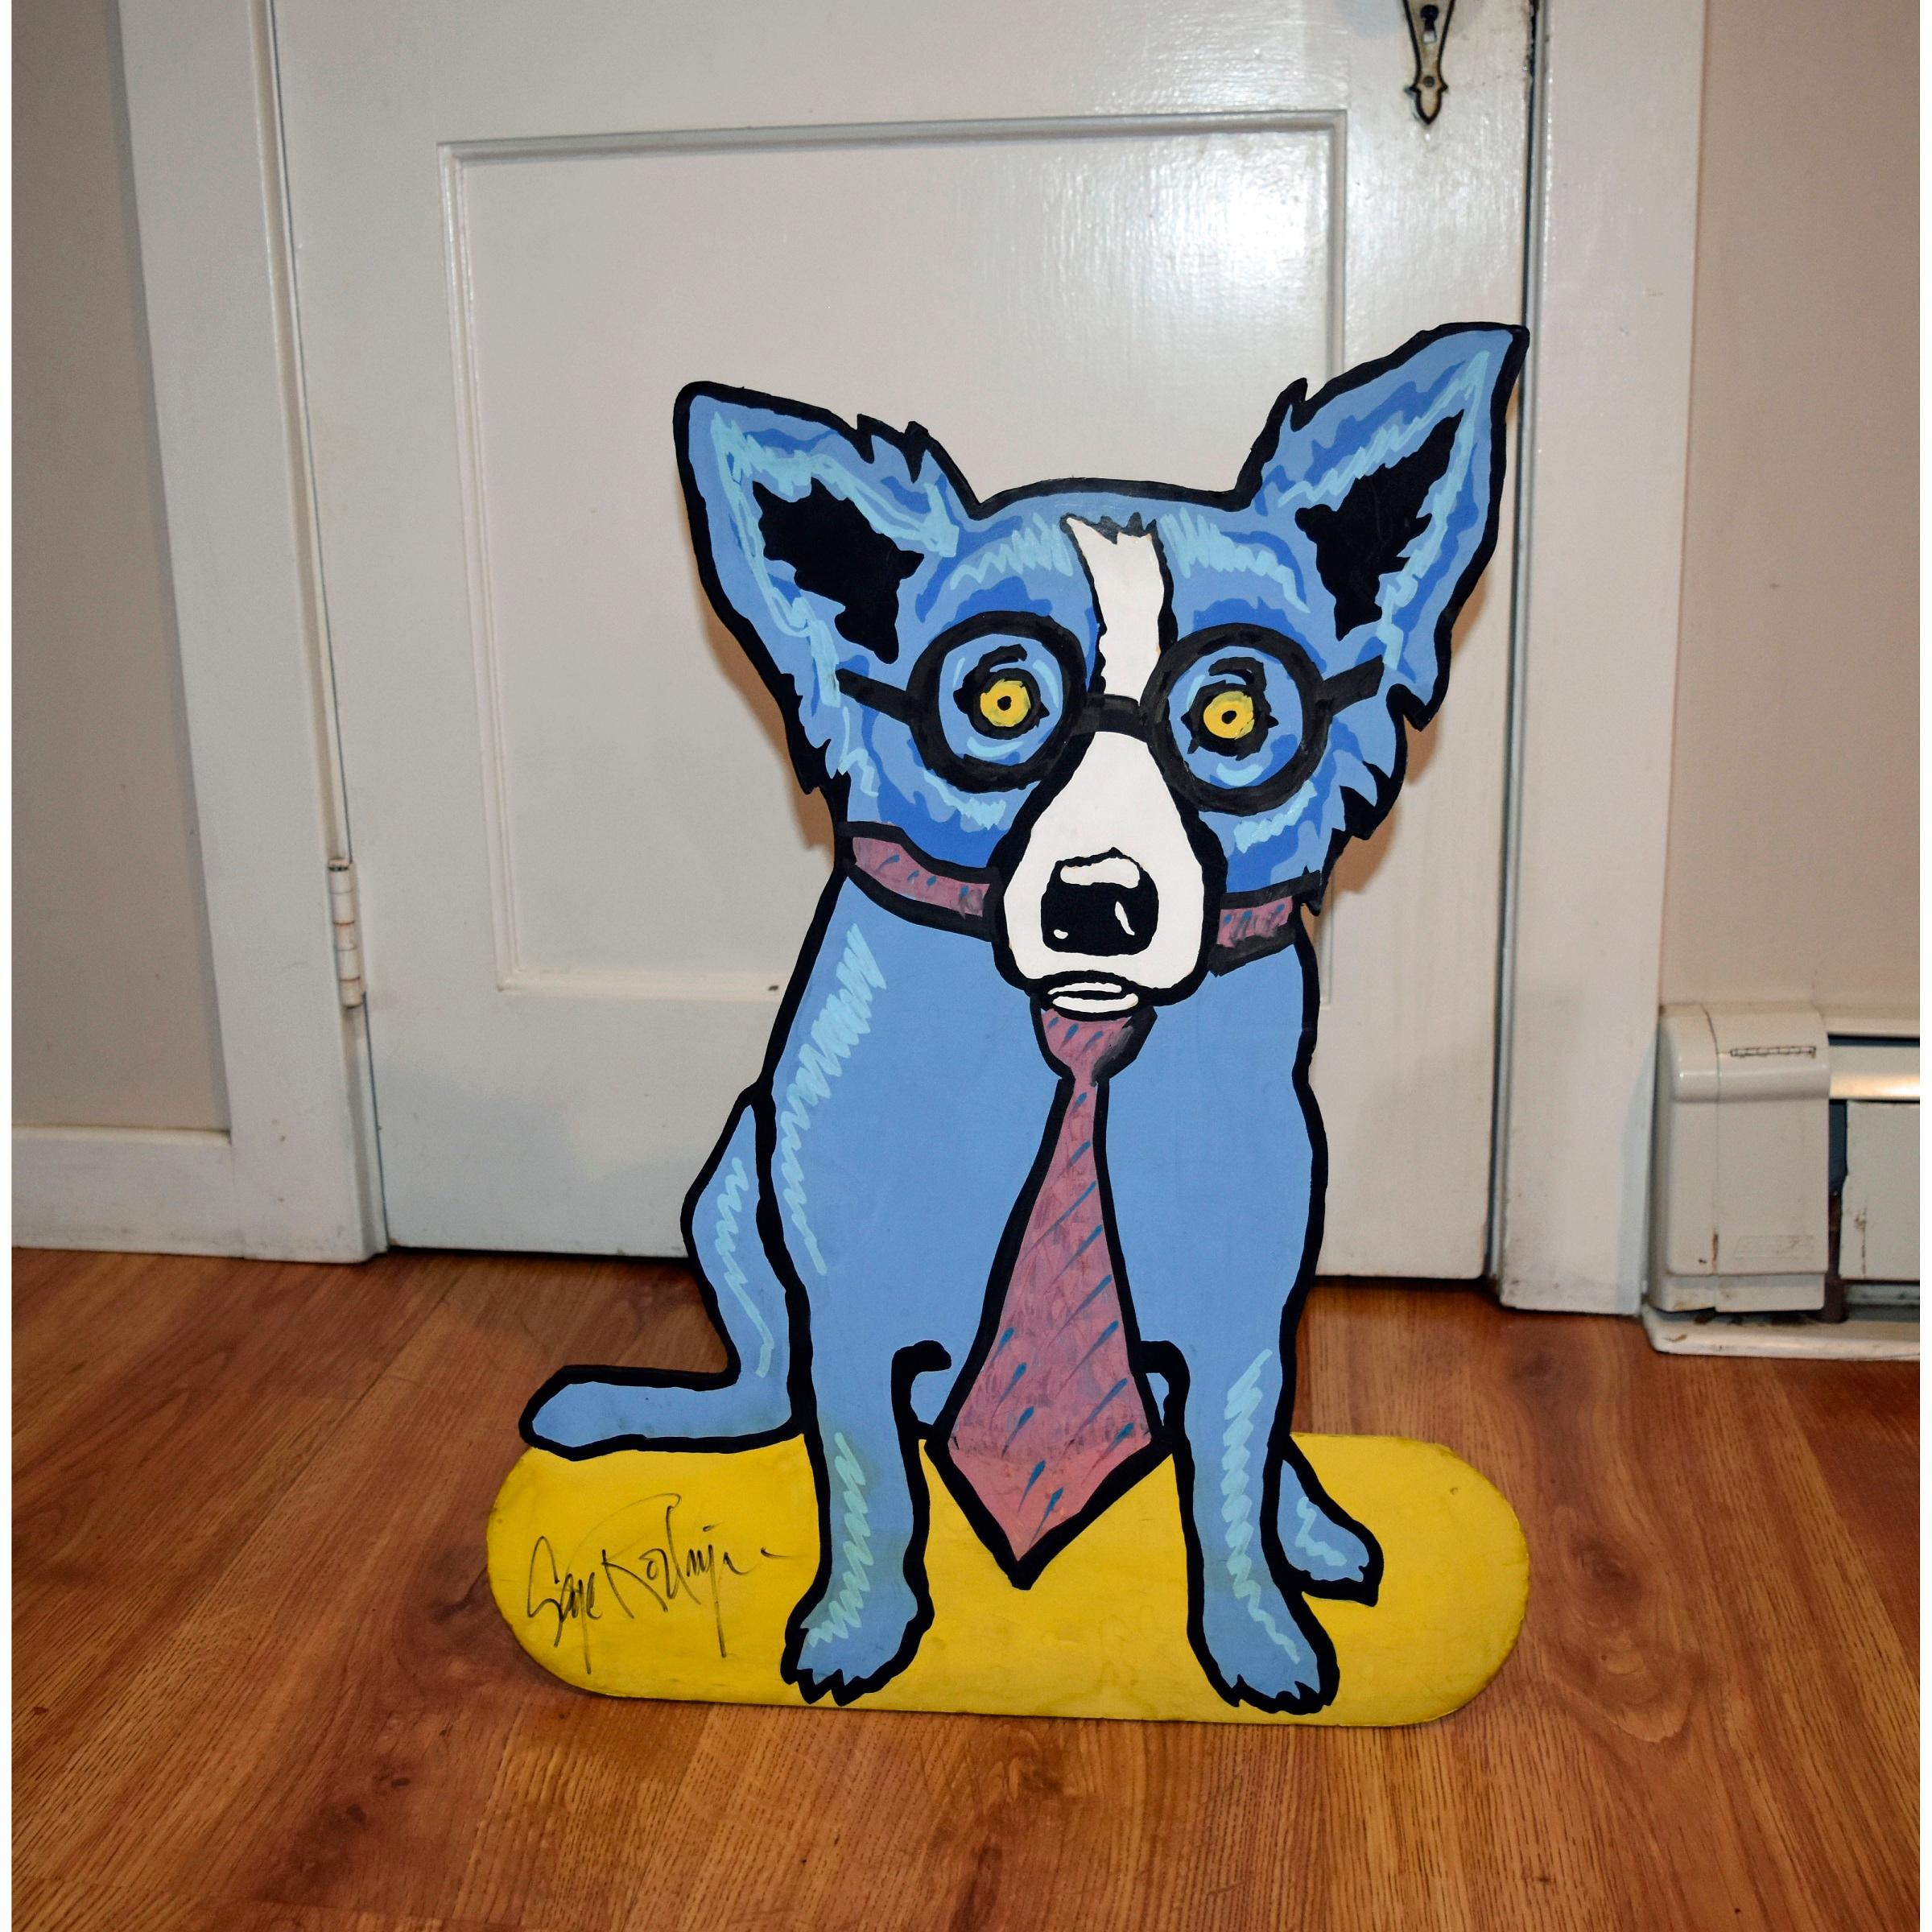 George Rodrigue Figurative Sculpture - Original - Untitled Blue Dog Sculpture on Foamboard